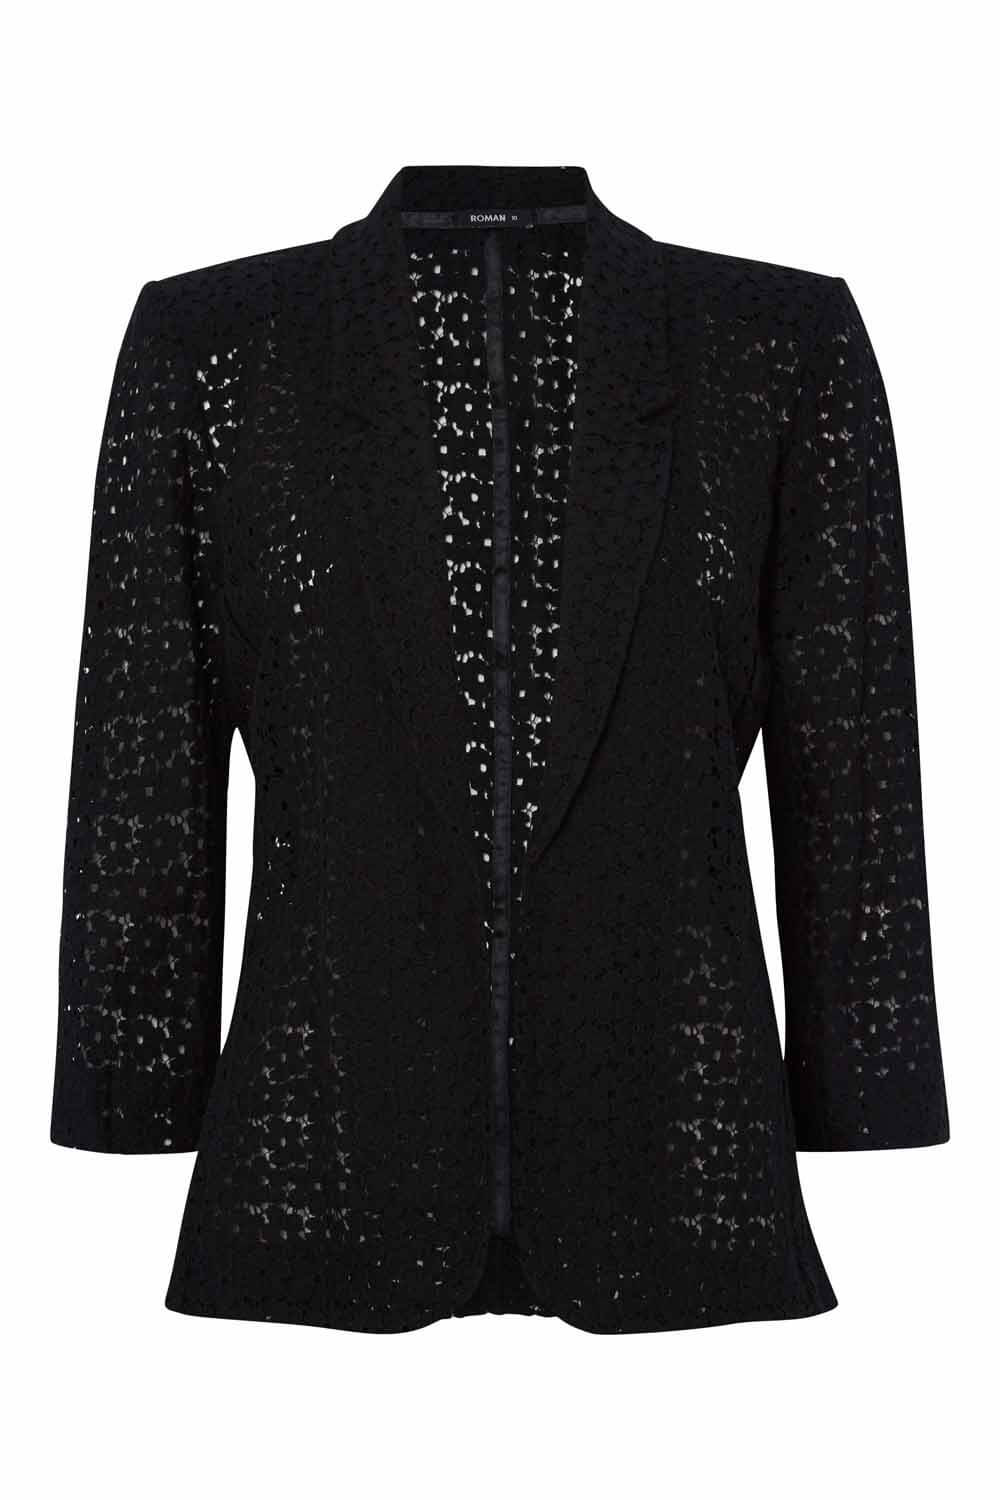 Black 3/4 Sleeve Lace Jacket, Image 5 of 5